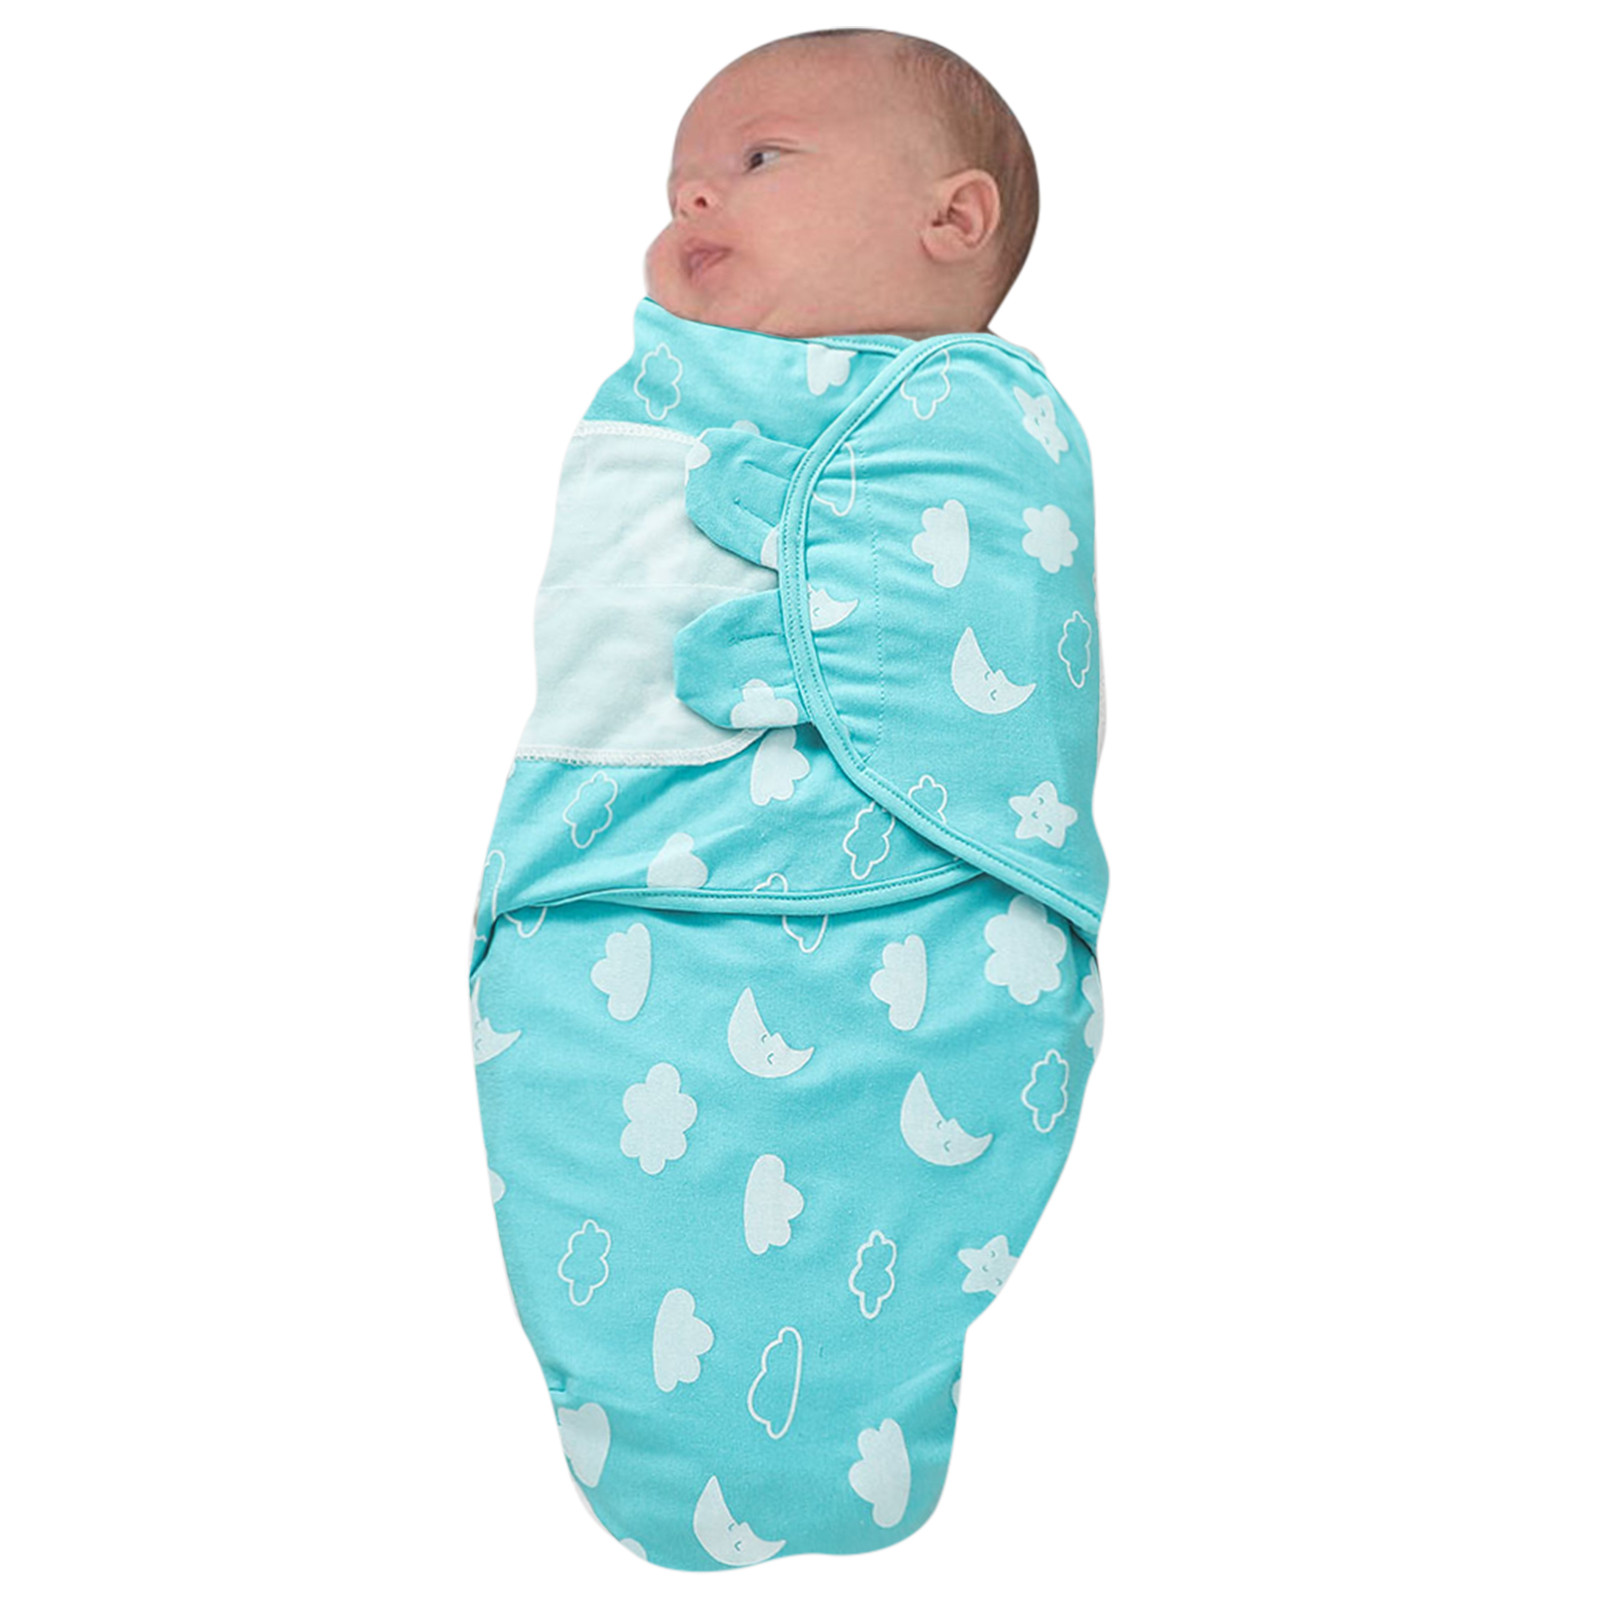 Elephant Theme Baby Stuff Blanket Bag Sleeping Wrap Girls Wearable Baby Swaddle Adjustable Boys Baby Warm Blanket for Baby Boy